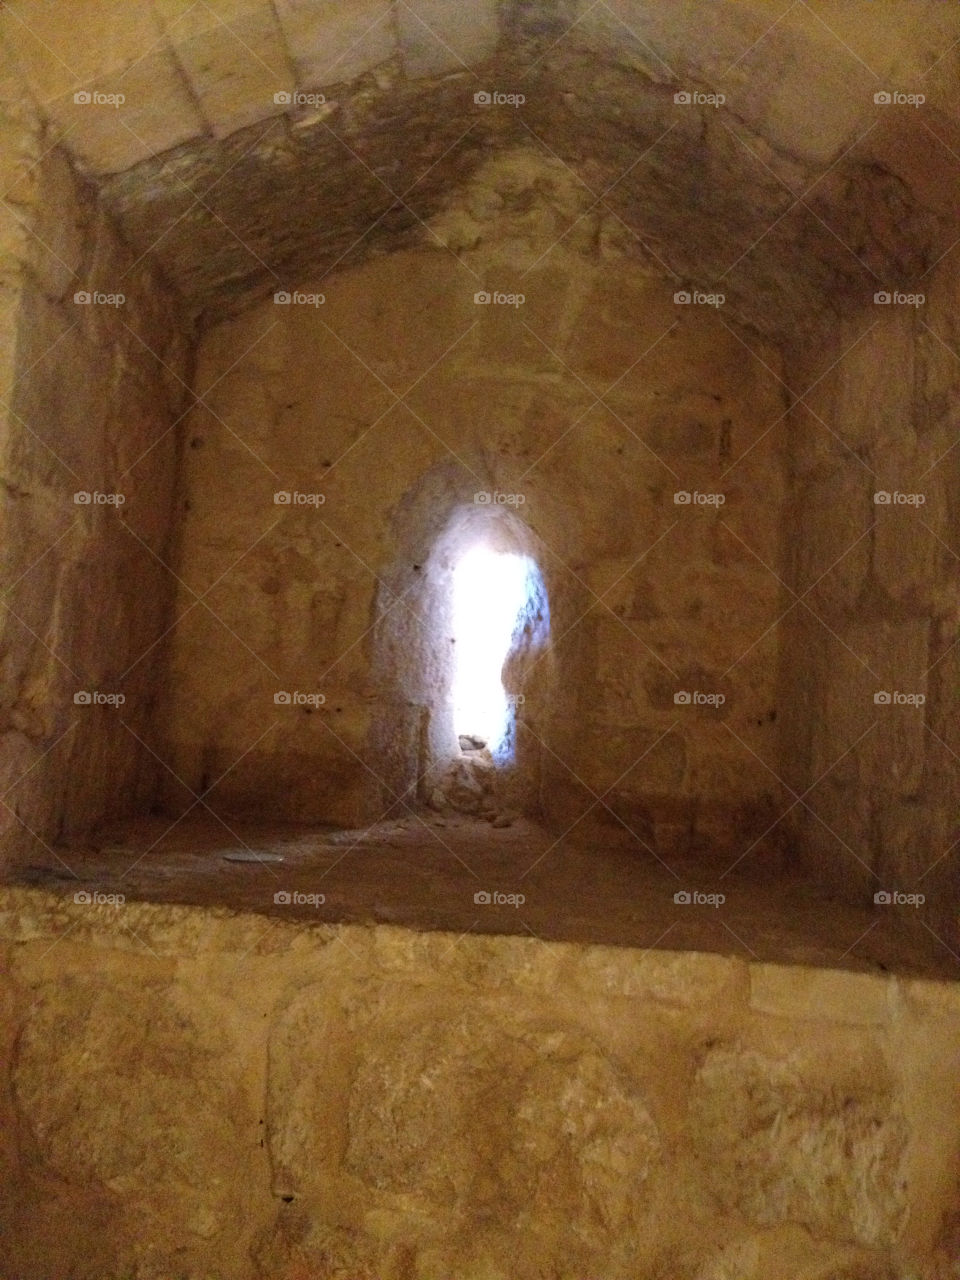 ajloon castle in jordan. in jordan ajloon city by haddadin